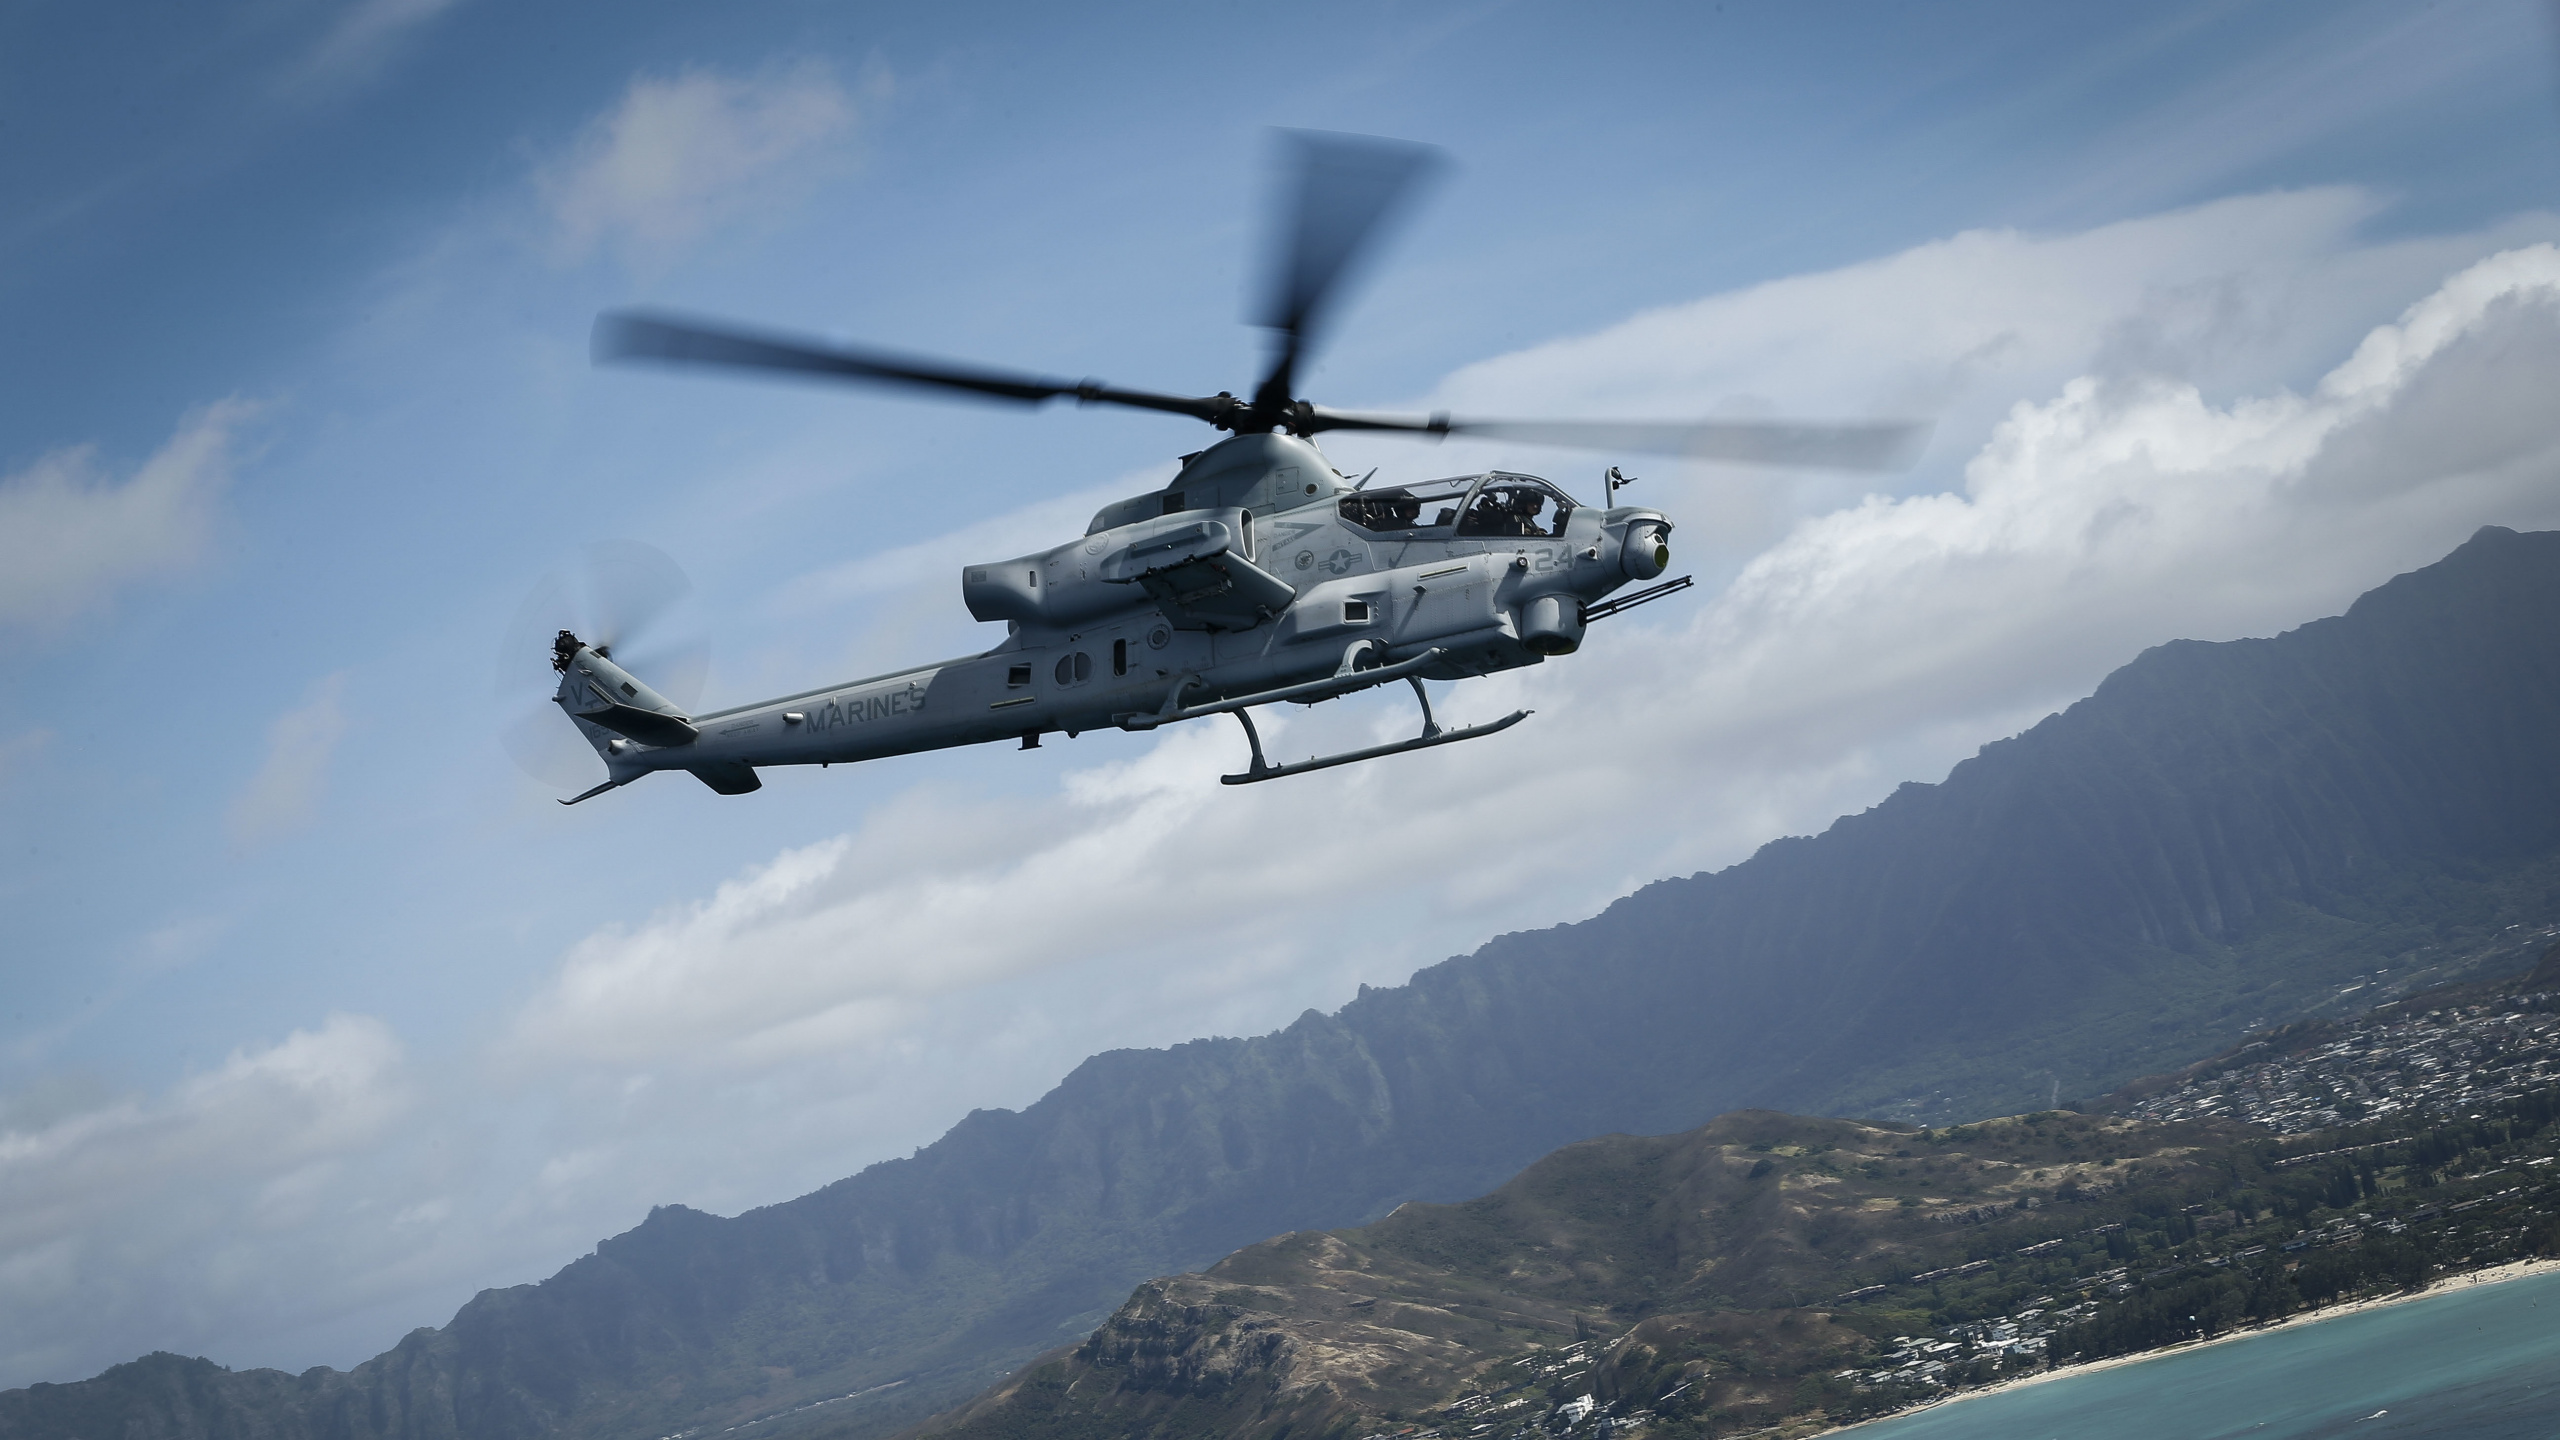 Hélicoptère Noir et Blanc Survolant la Montagne Pendant la Journée. Wallpaper in 2560x1440 Resolution